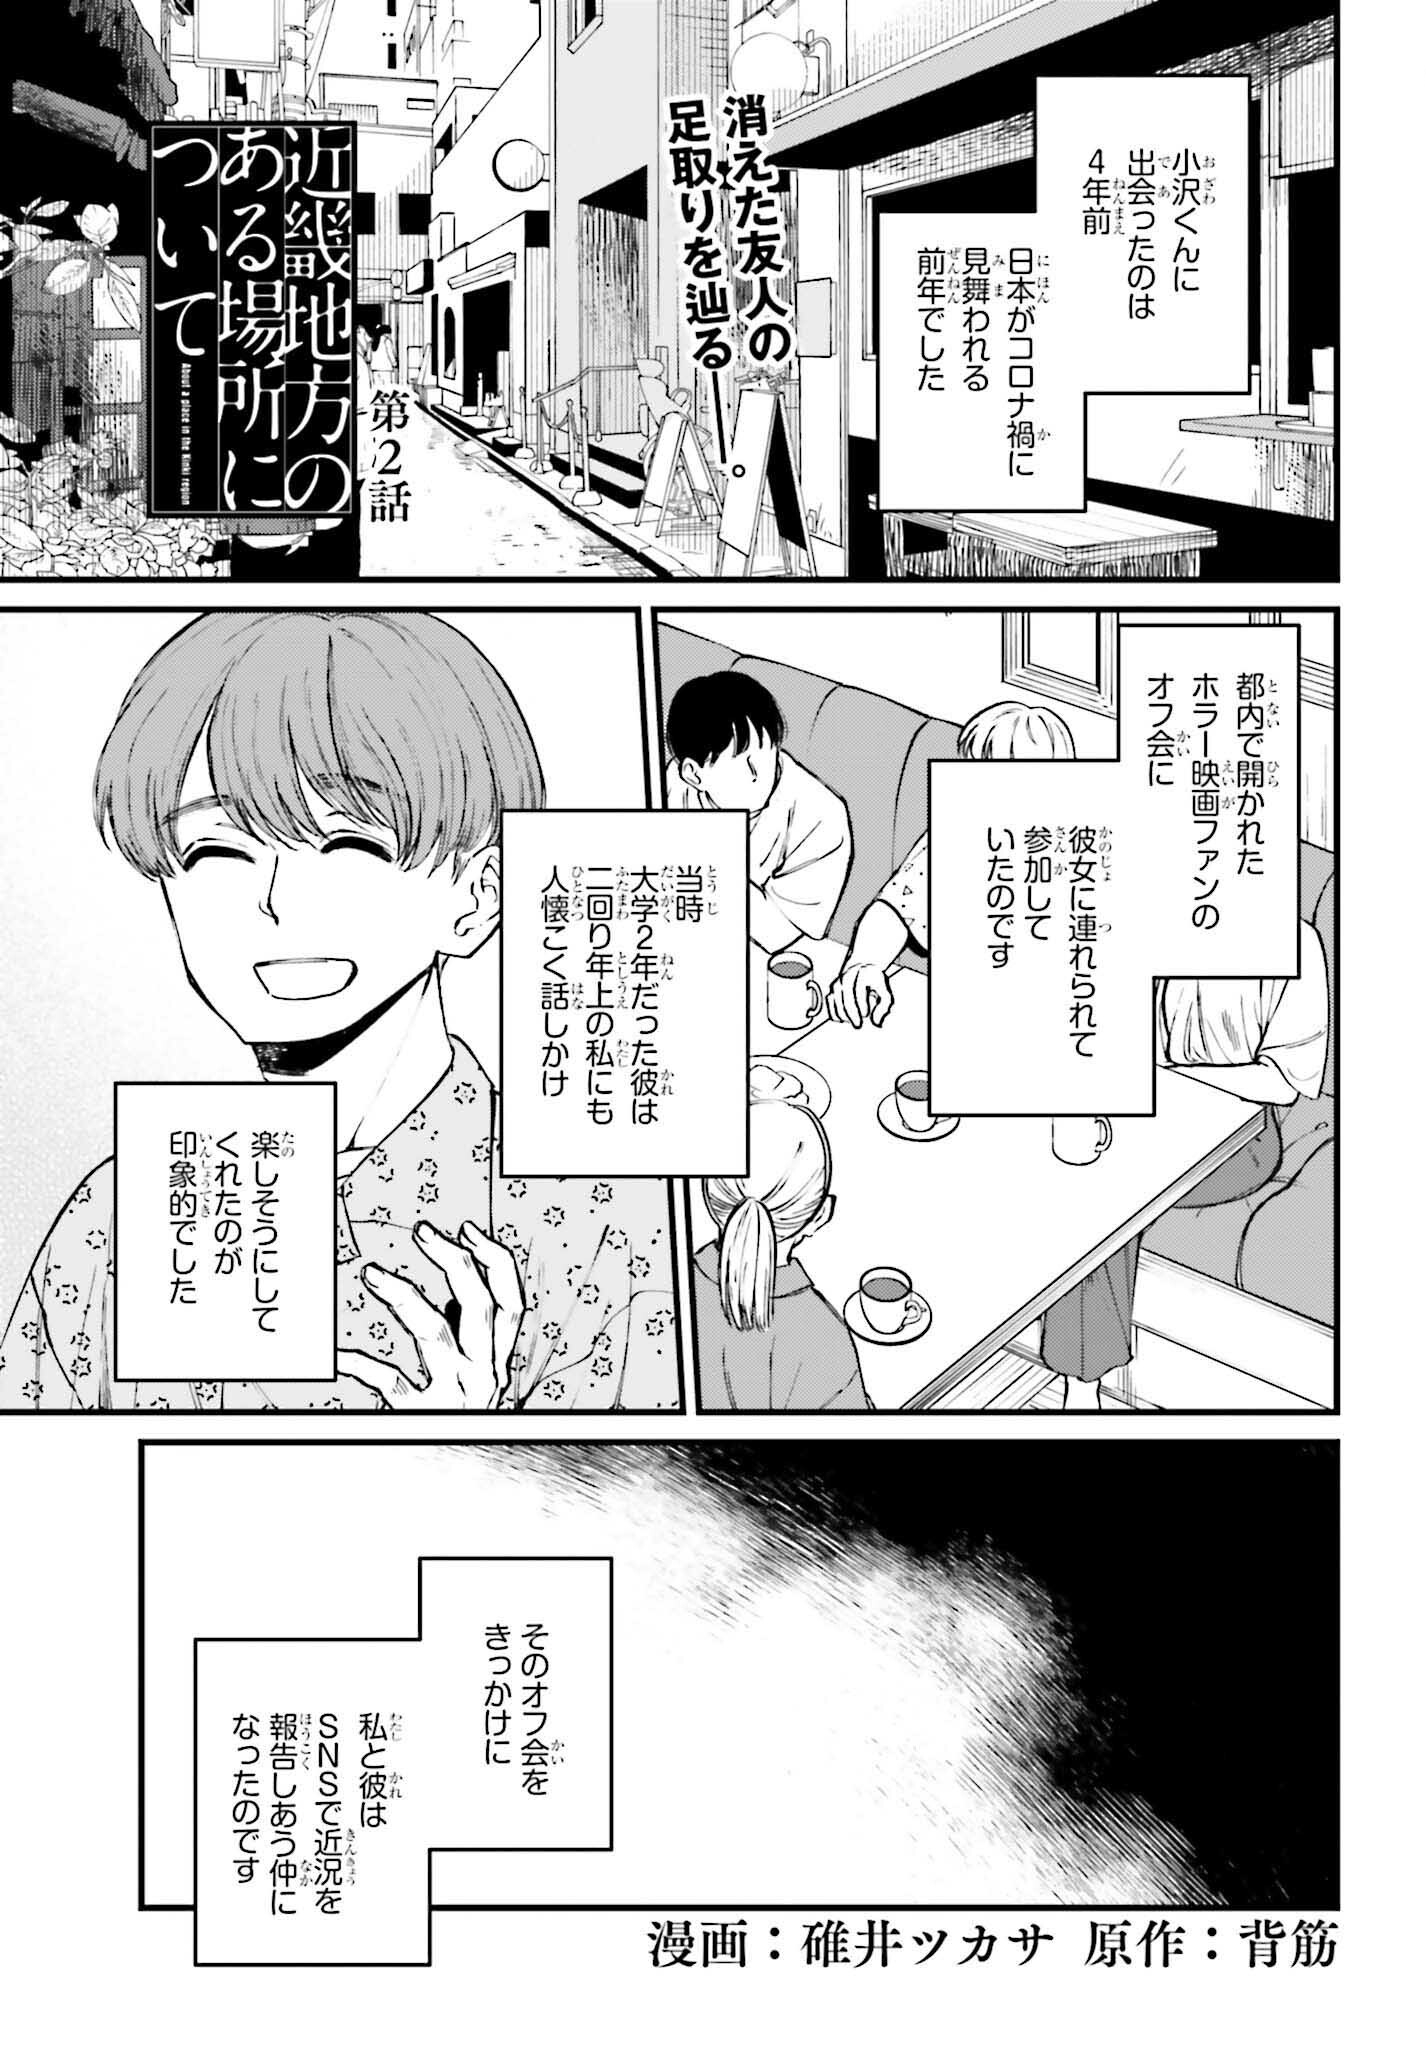 Kinki Chihou no Aru Basho ni Tsuite - Chapter 2 - Page 1